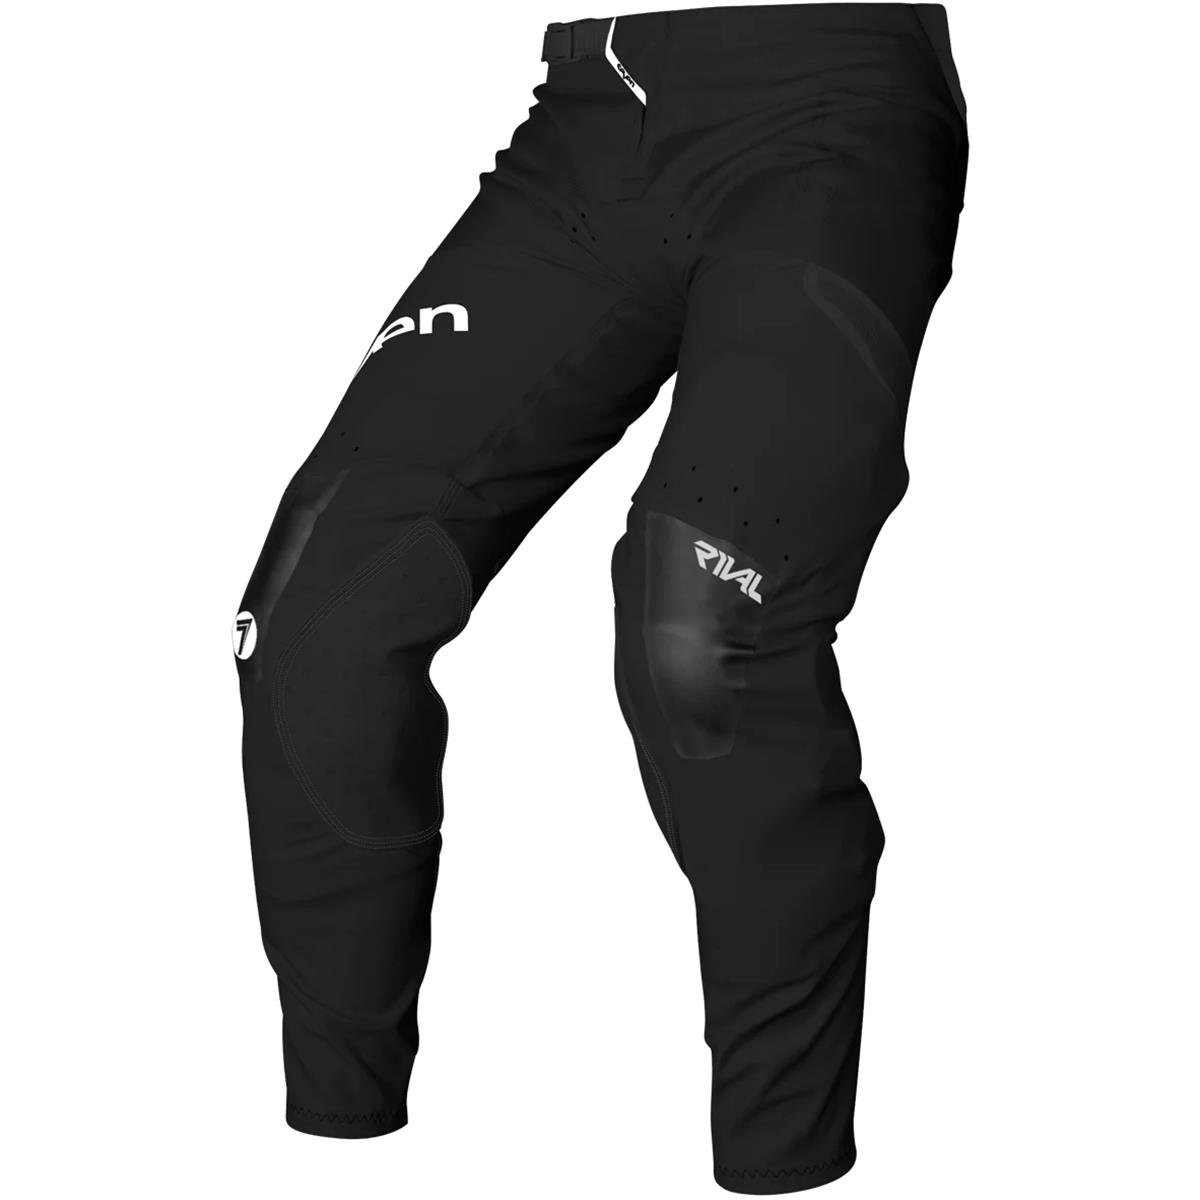 Seven MX MX Pants Rival Staple Black